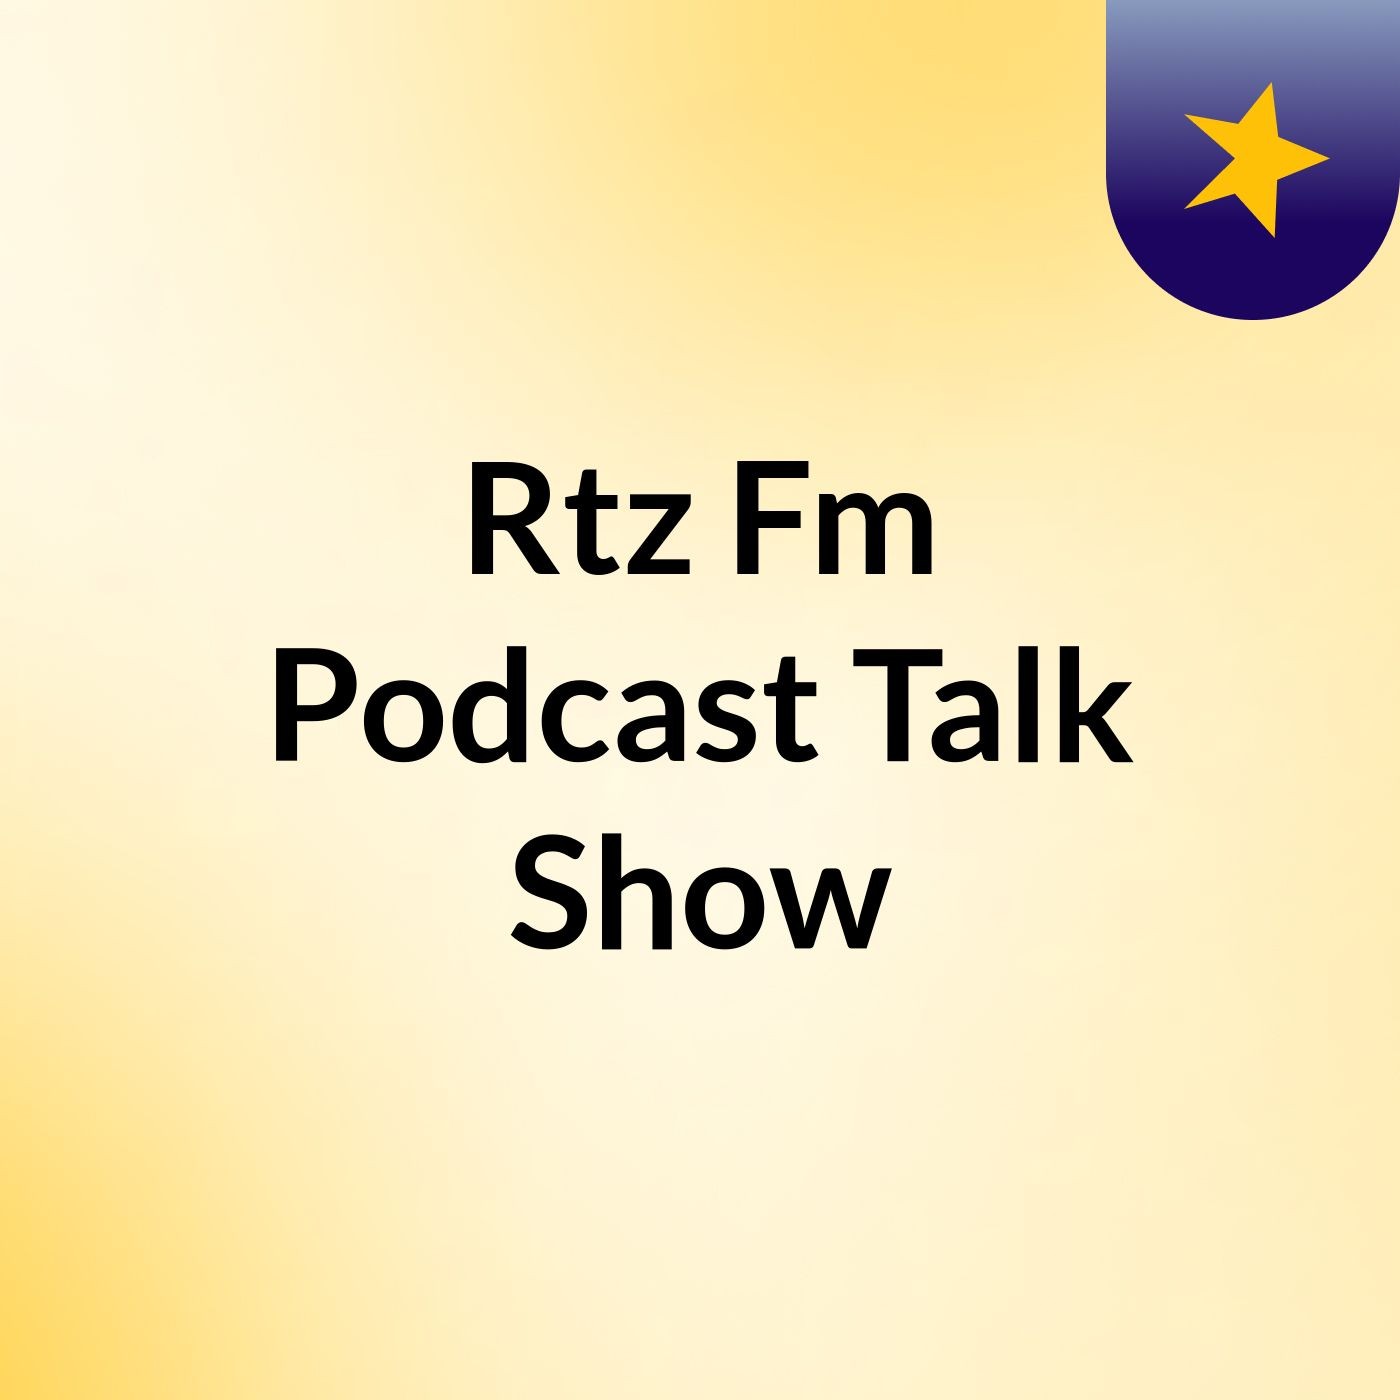 Episode 4 - Rtz Fm Podcast Talk Show